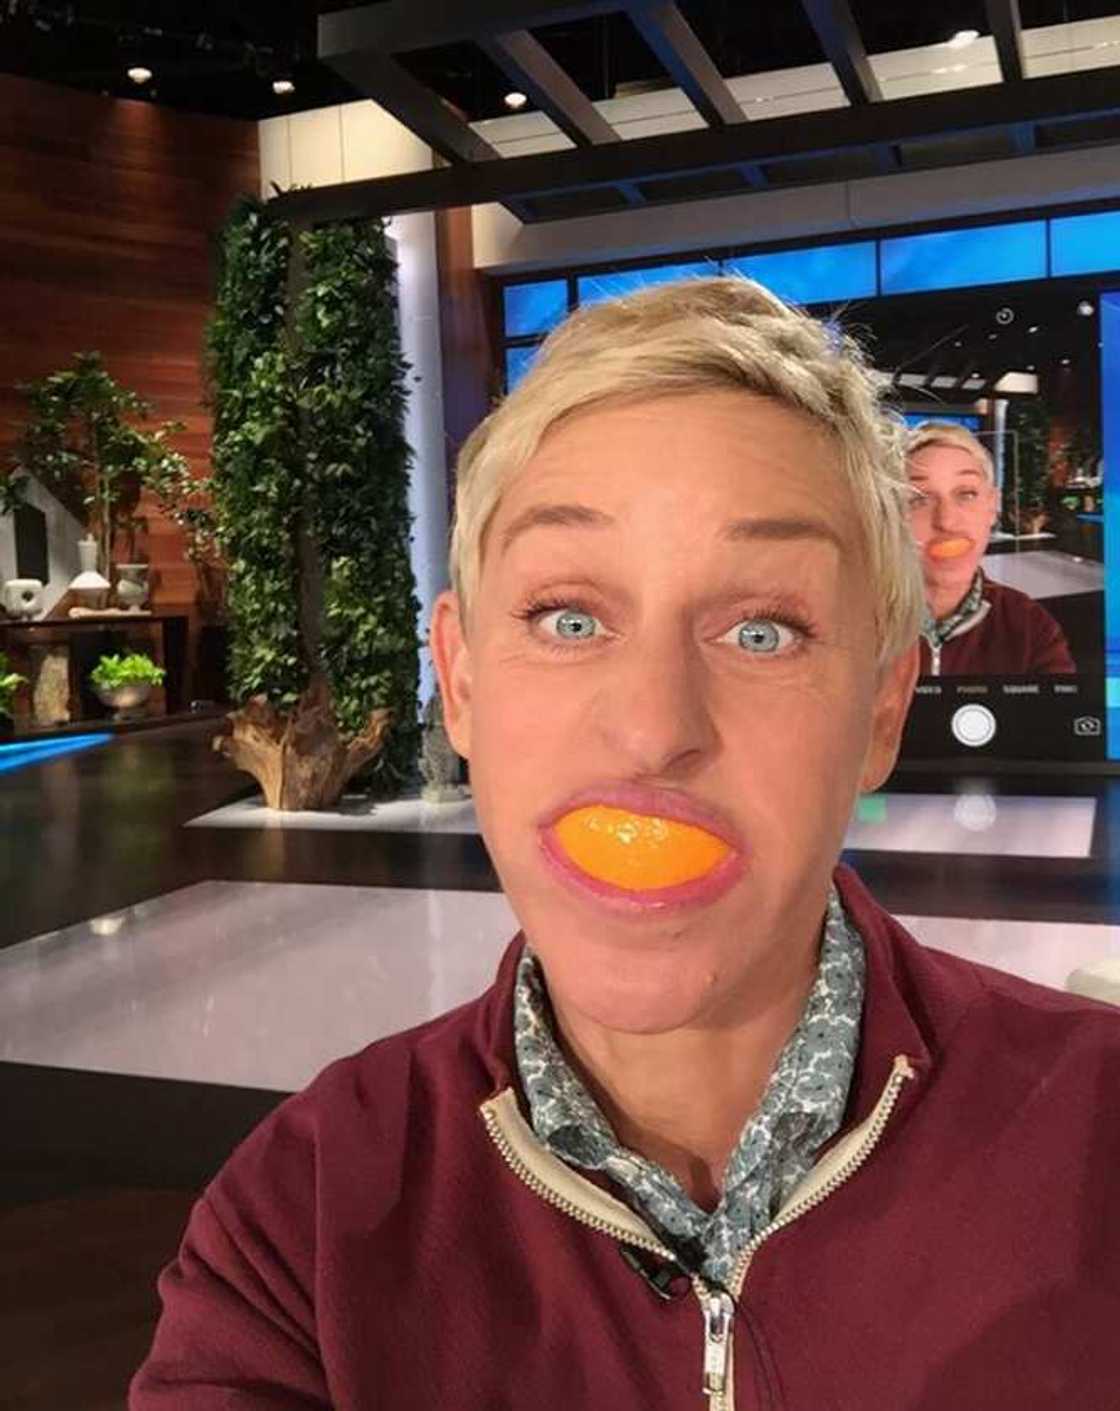 Ellen's net worth